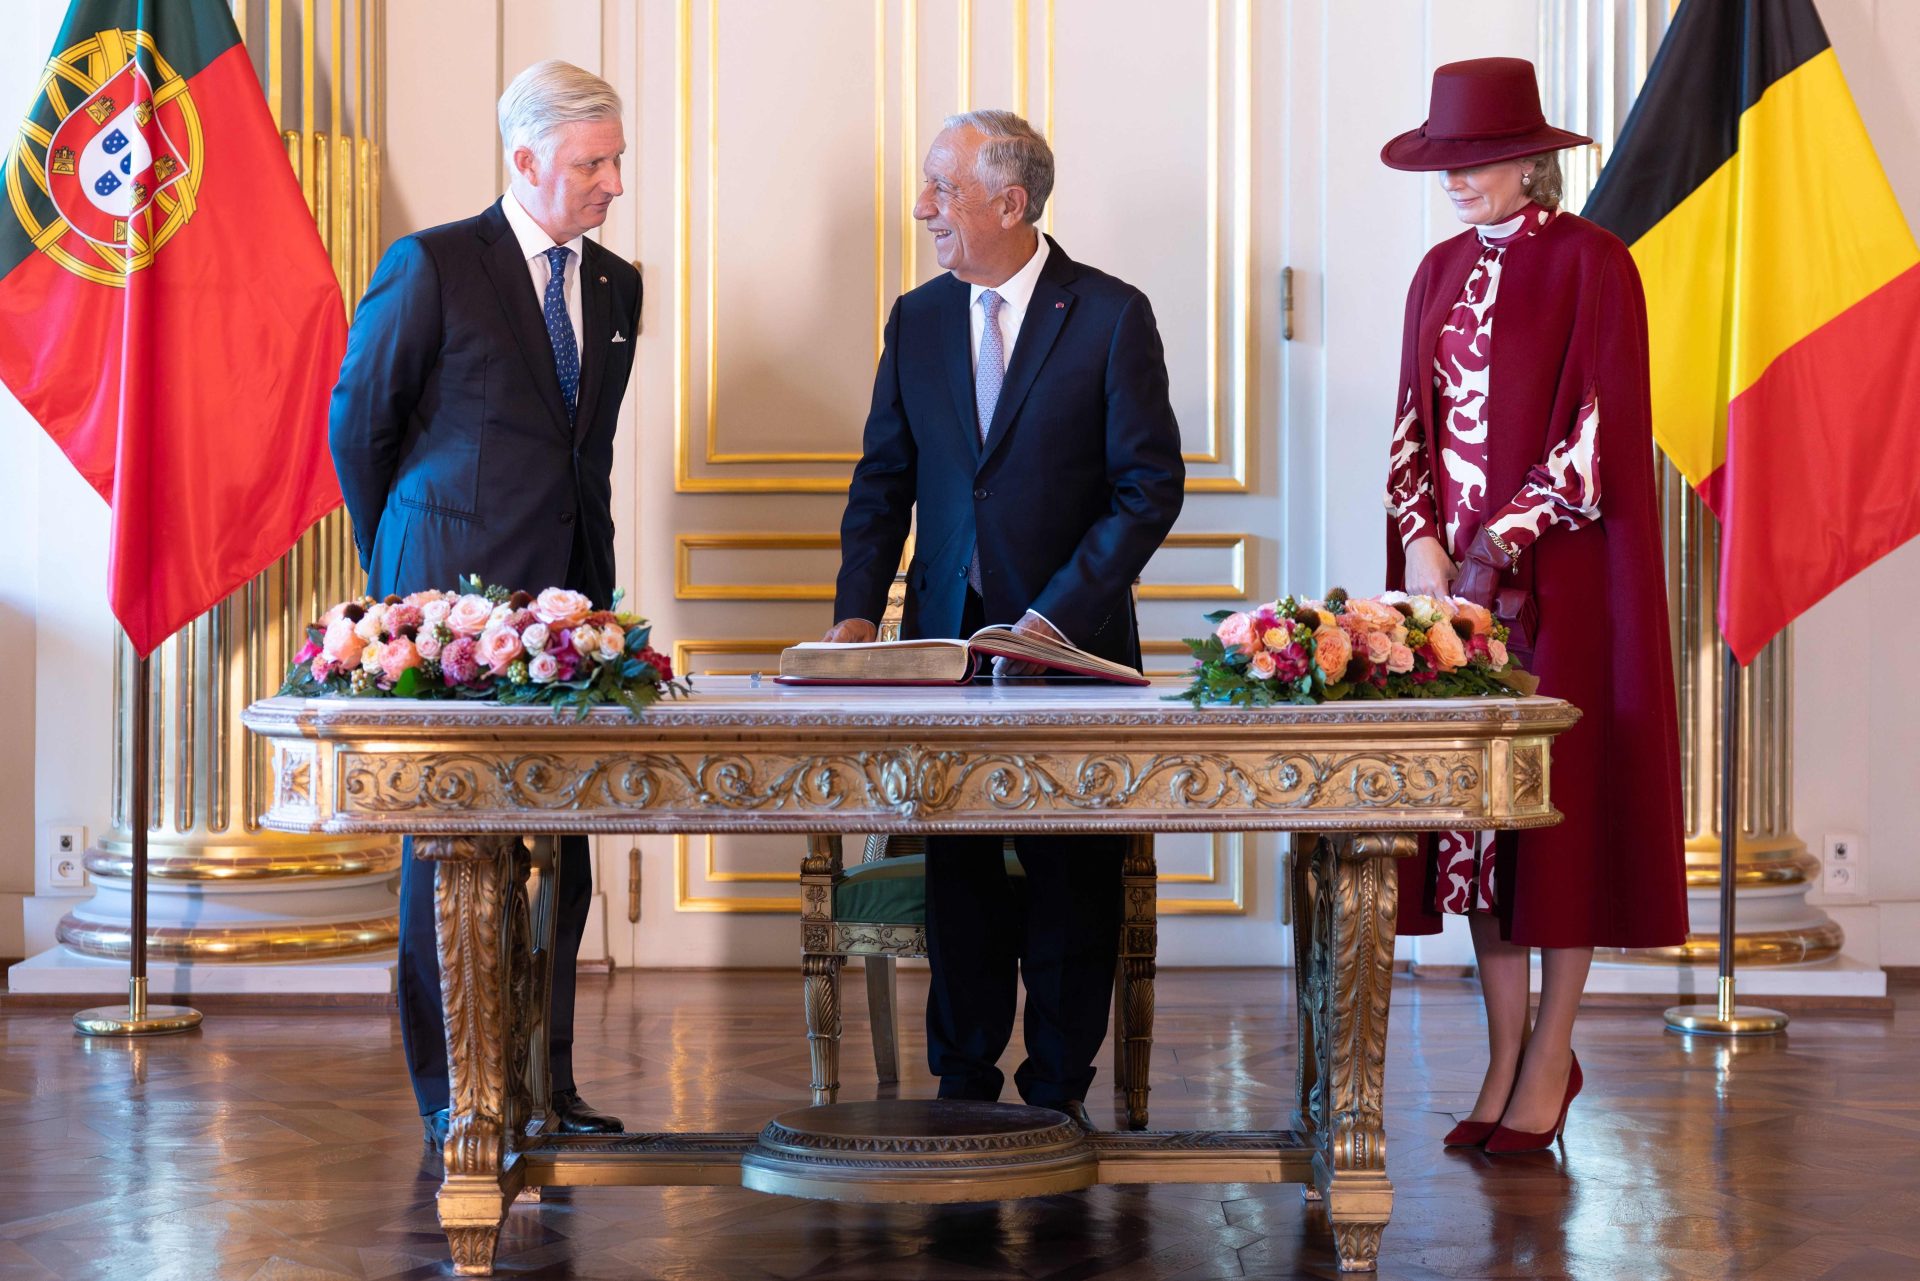 Marcelo recebido no Palácio Real e no Parlamento Federal da Bélgica